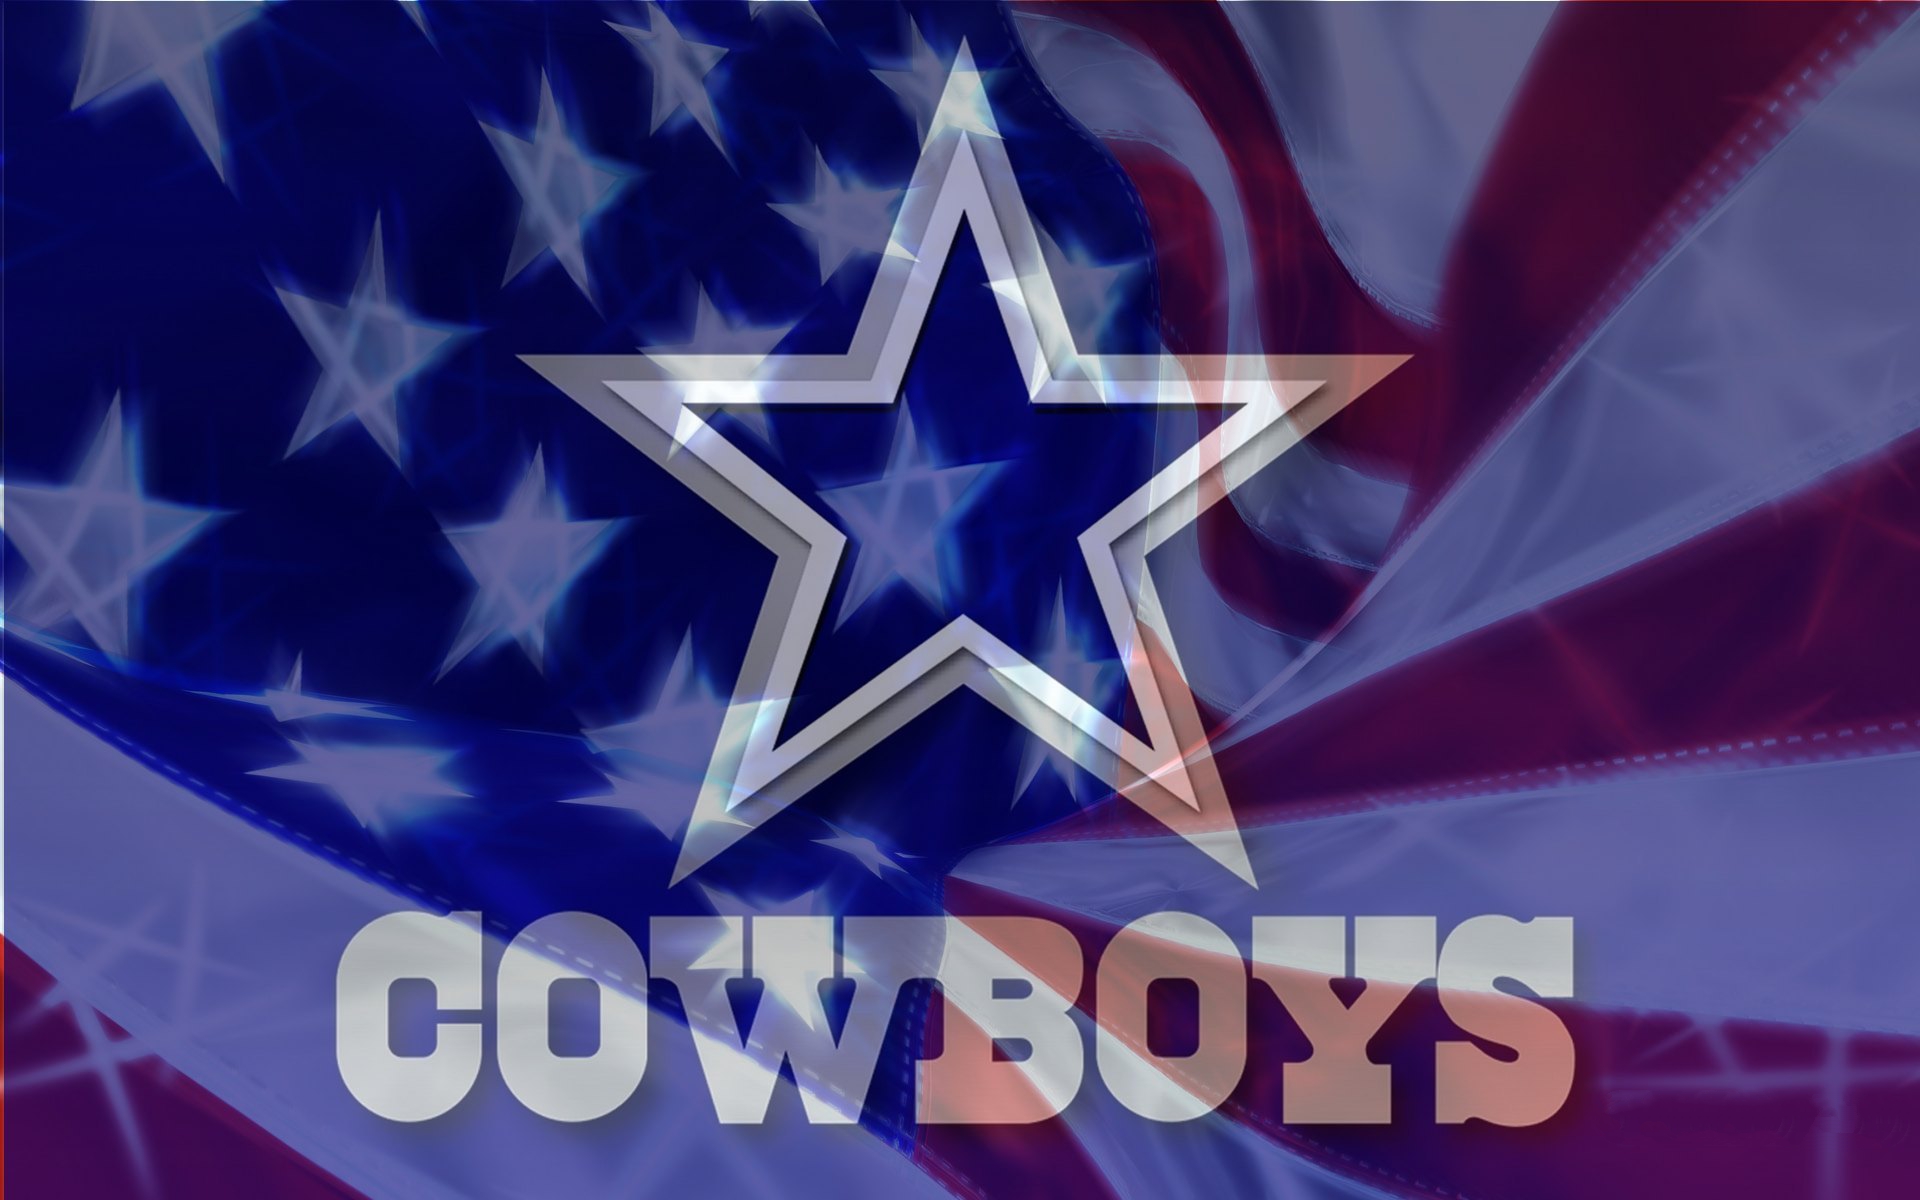 Dallas Cowboys Cheerleaders Wallpaper